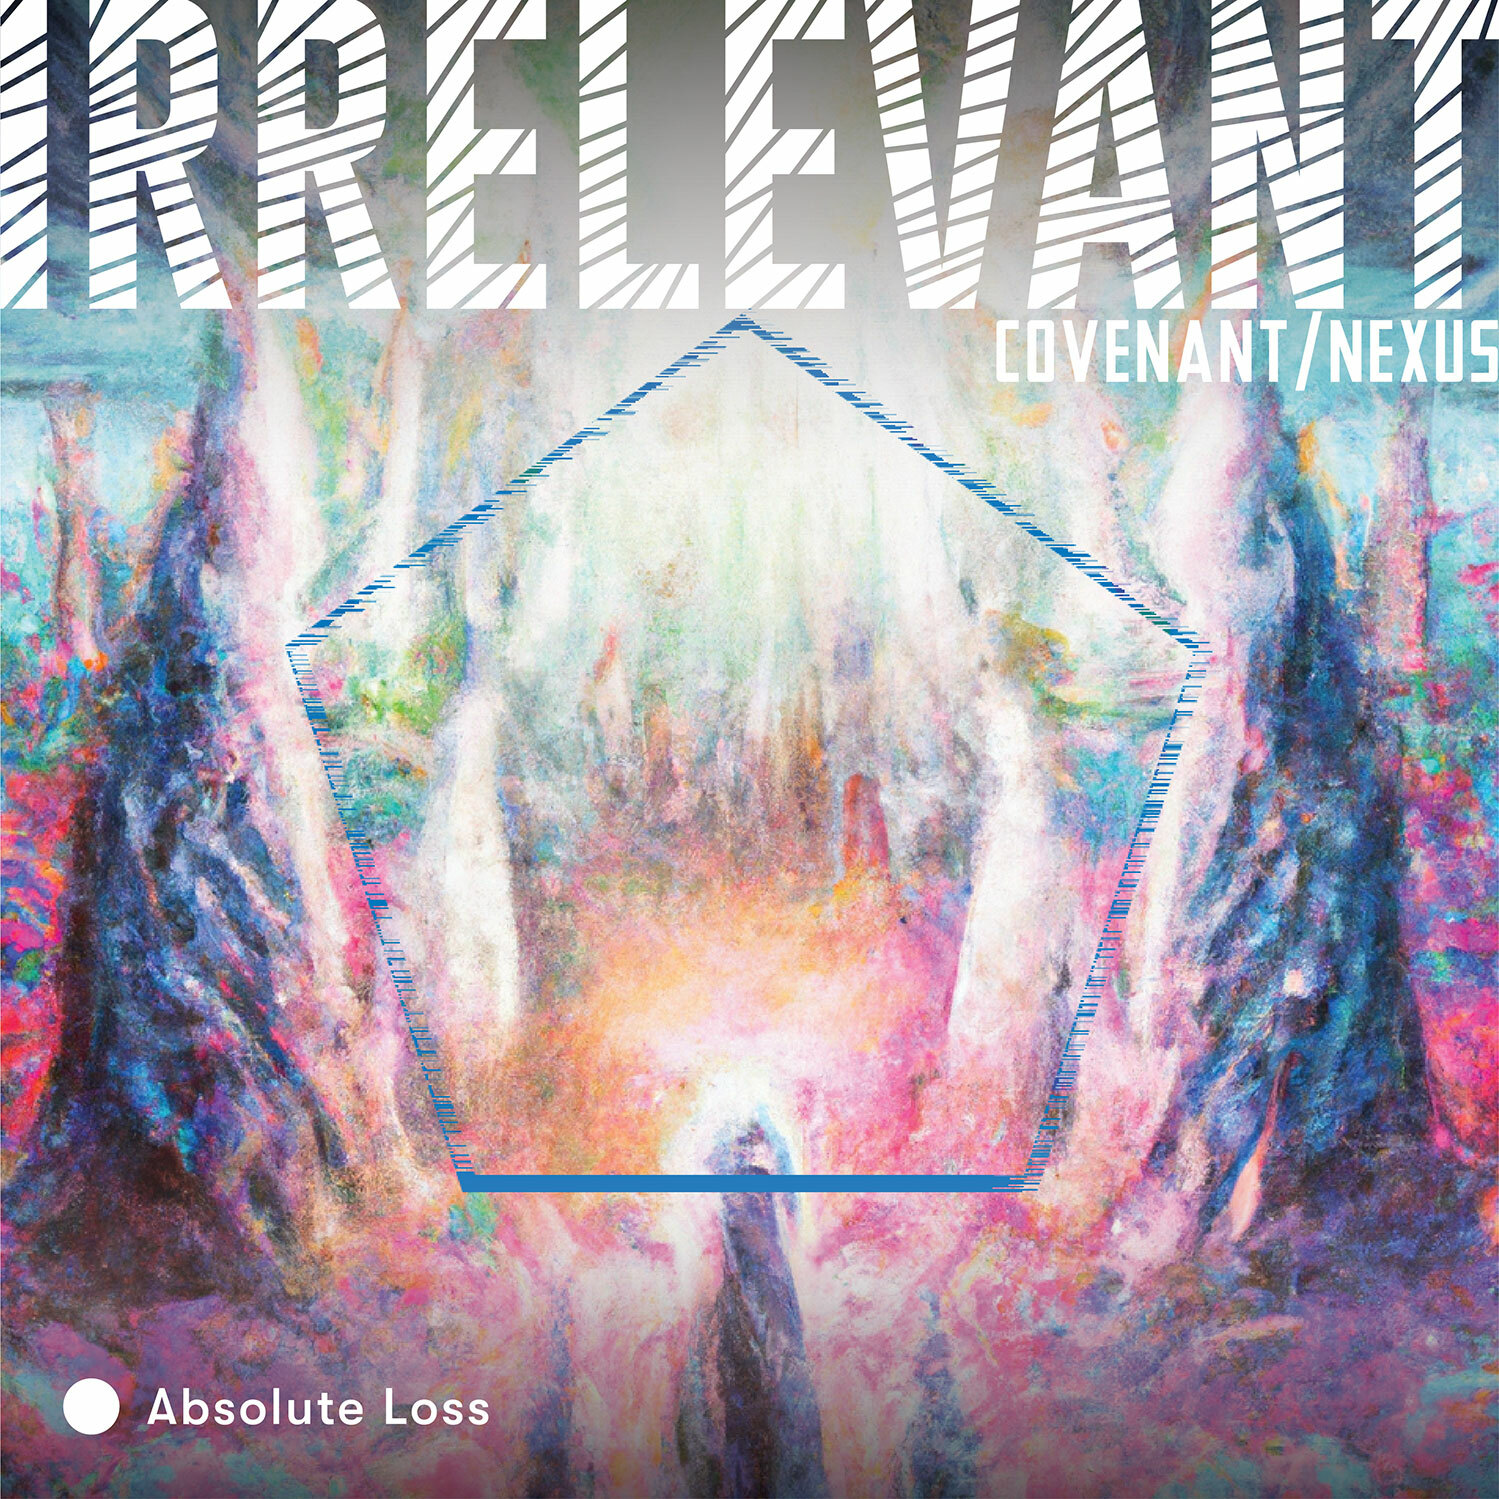 Irrelevant - Covenant/Nexus